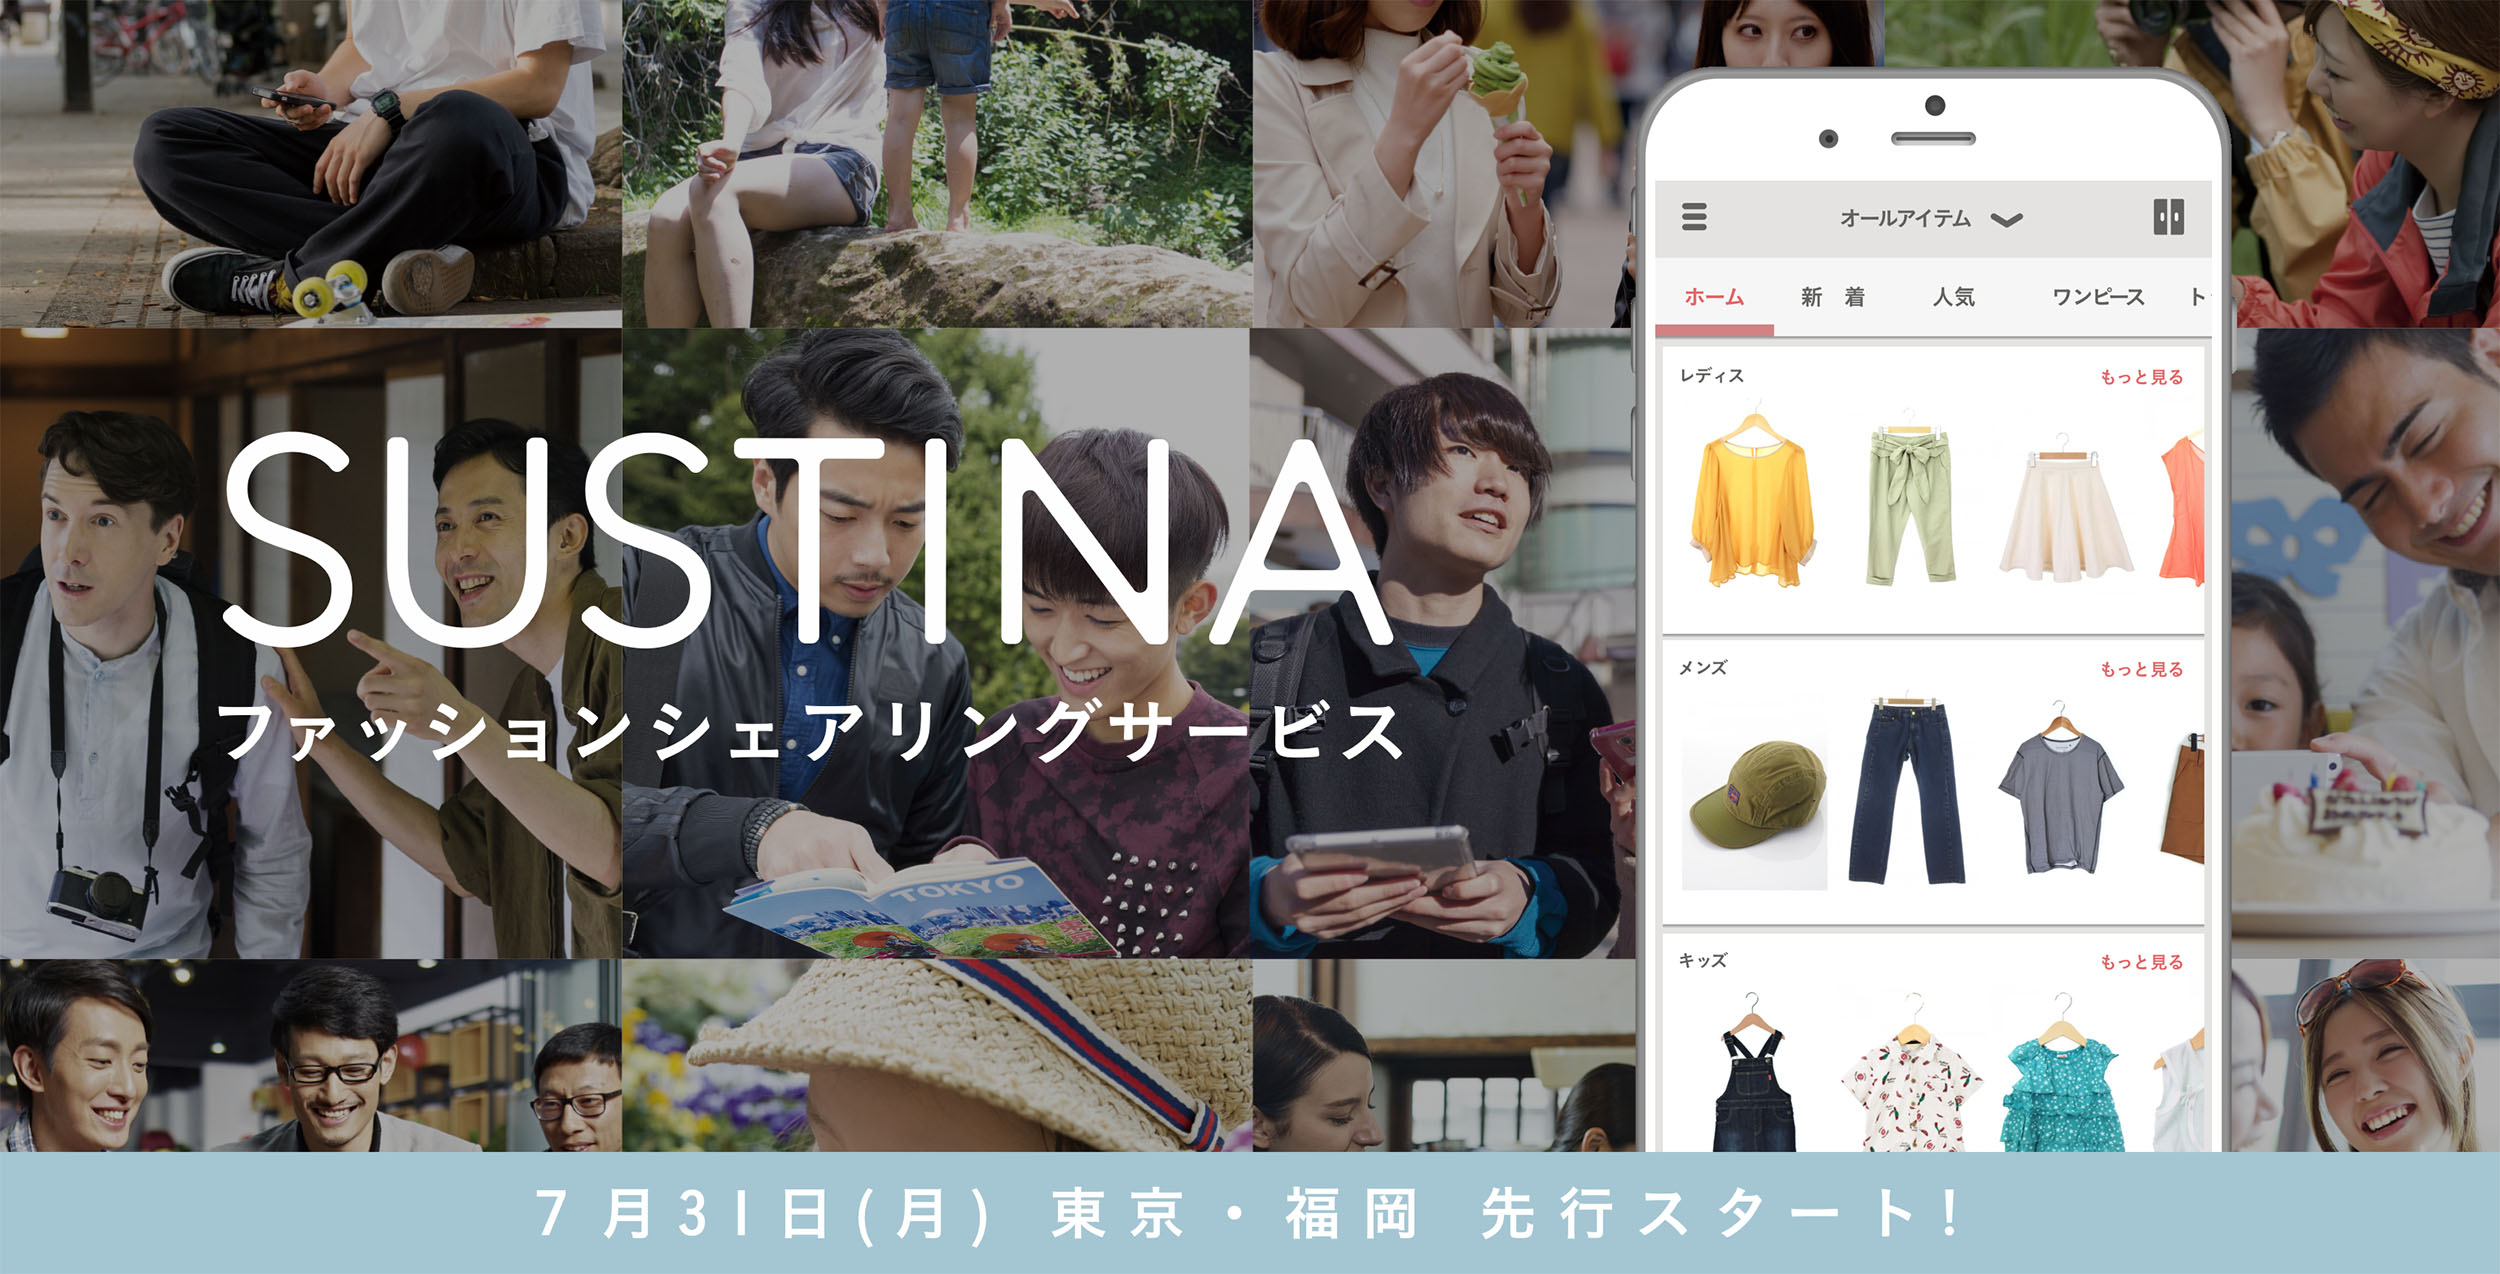 ファッションレンタルアプリ Sustina サスティナ メンズ キッズ服の提供を東京 福岡地域からスタート 個人間で洋服 の交換ができる共有機能も合わせて開始 事前登録申込みも受付中 オムニスのプレスリリース